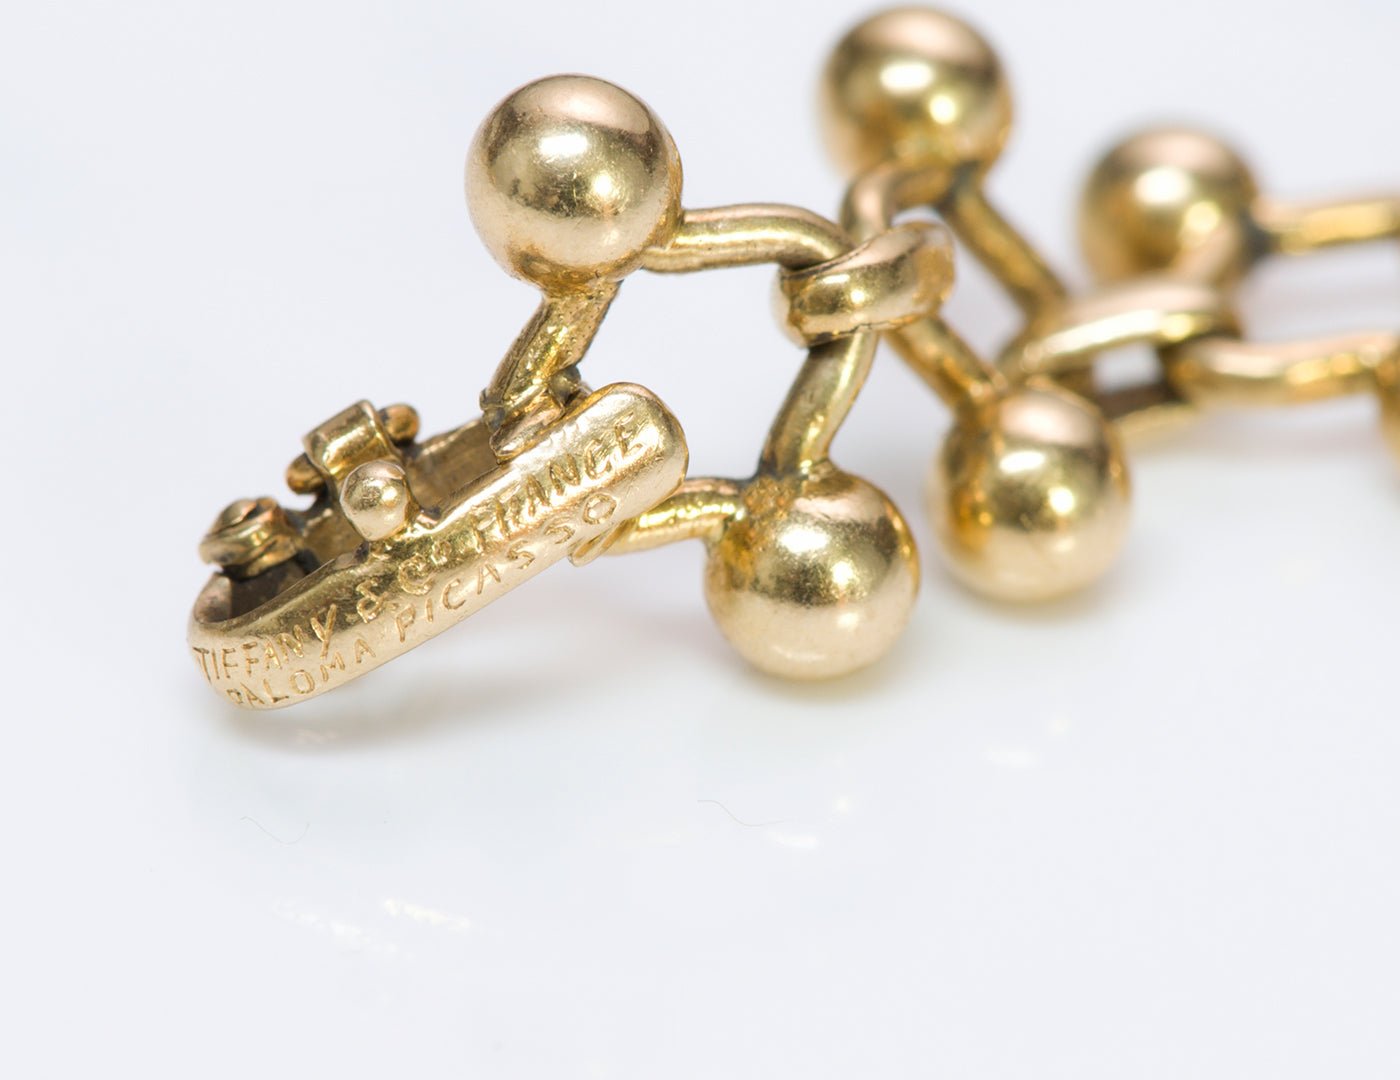 Tiffany & Co. France Paloma Picasso 18K Gold Ball Link Bracelet